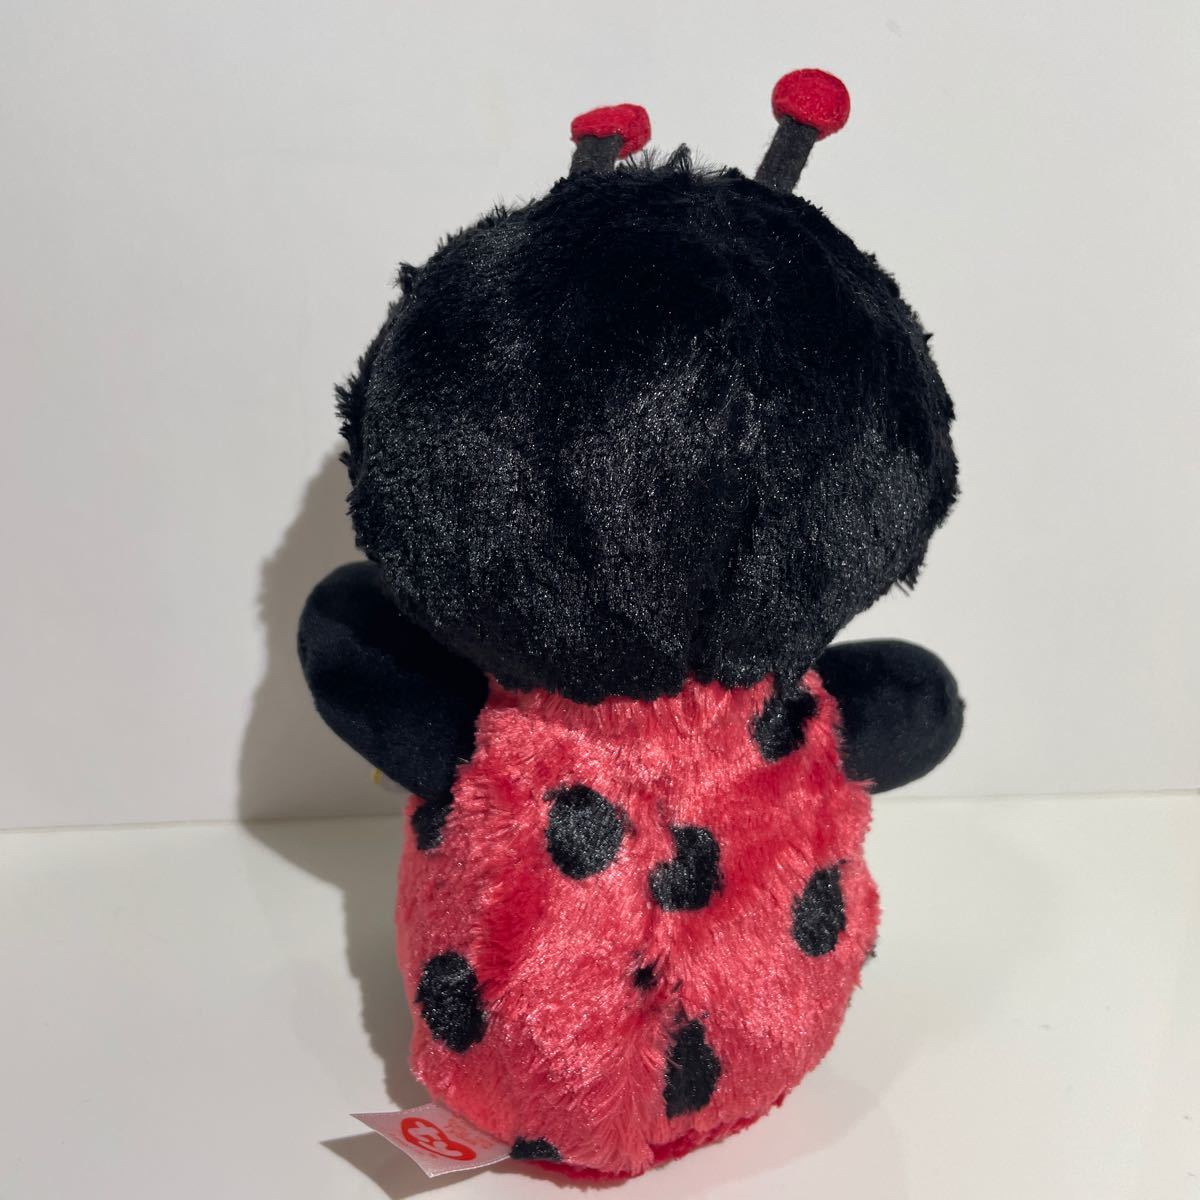  Beanie b-zTy BEANIE BOOS tent umsiIZZYiji- soft toy ladybug 